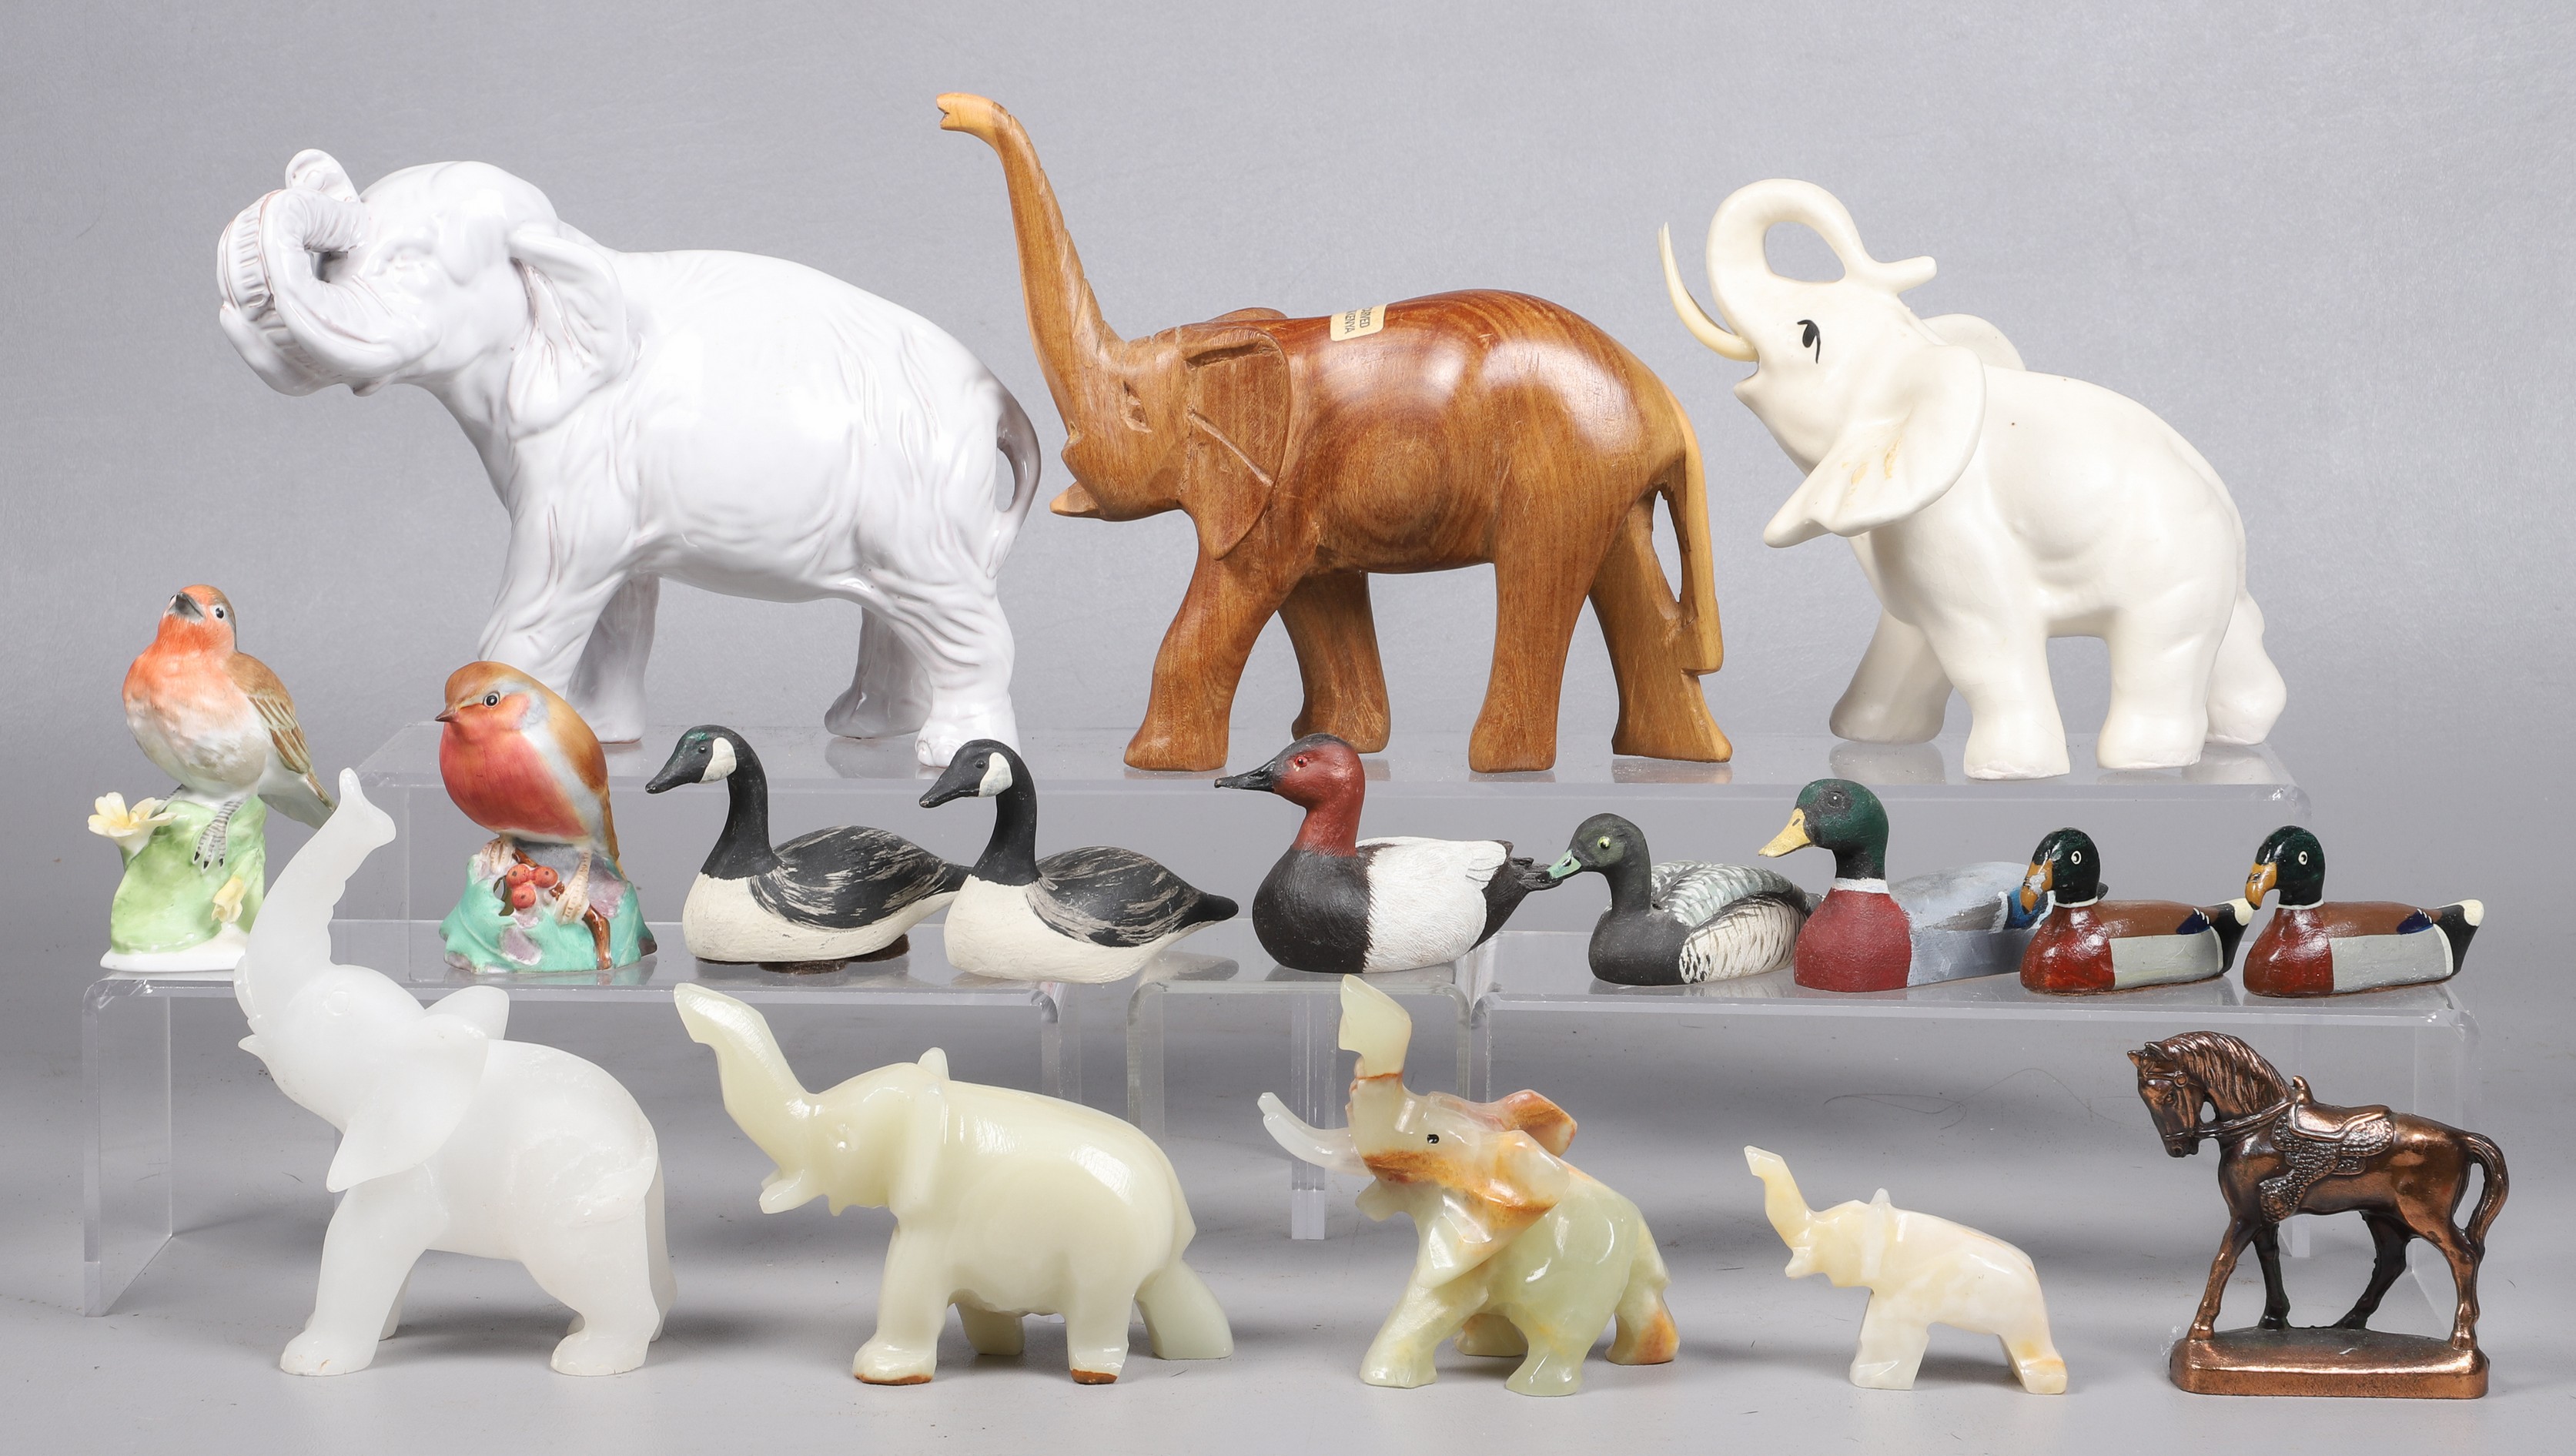  17 Animal figurines including 2e13de